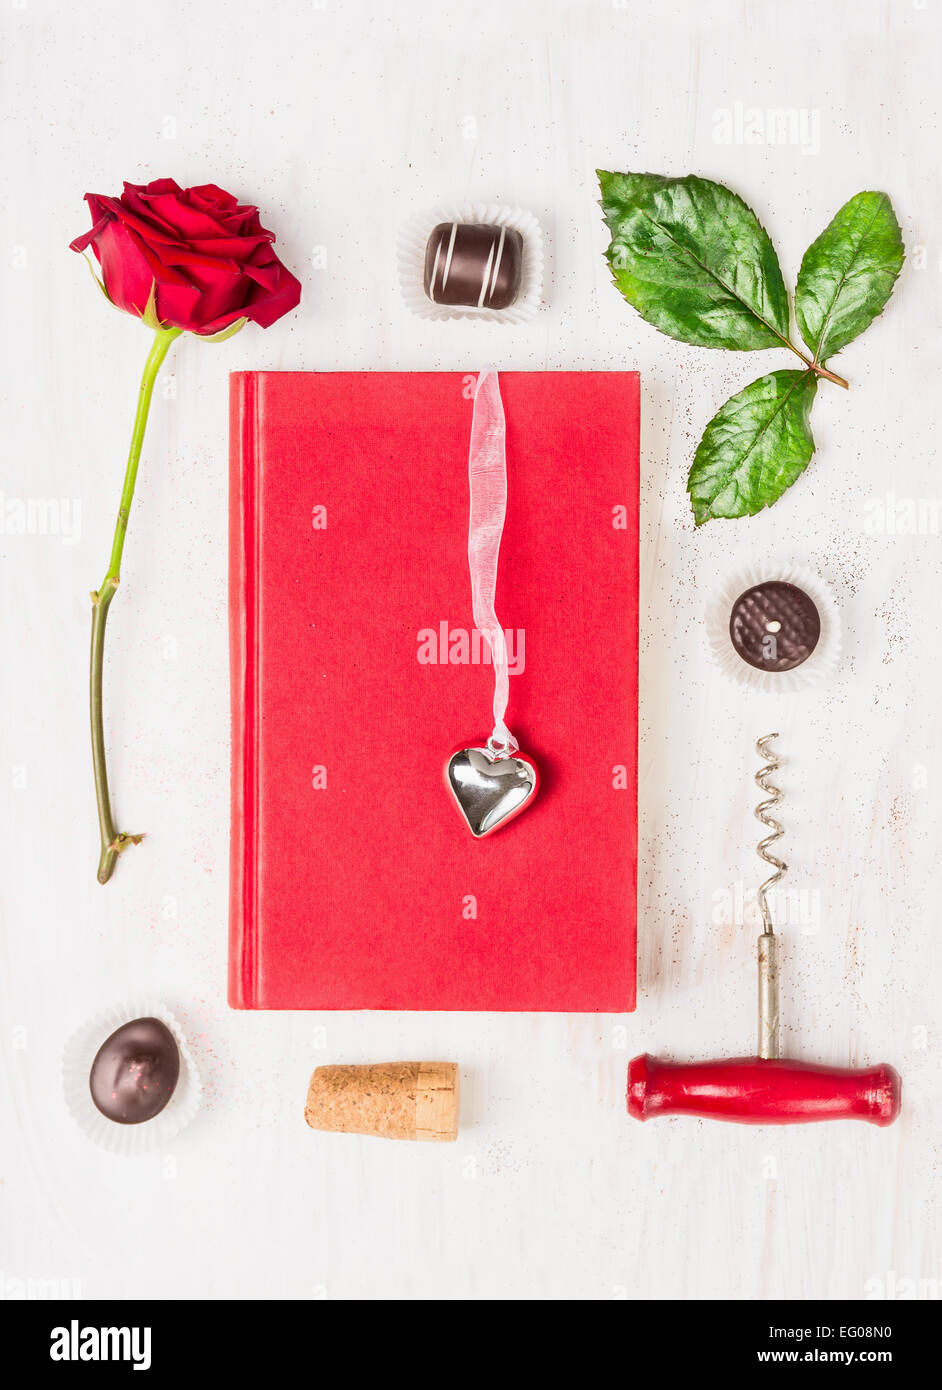 Liebesgeschichte komponieren mit Buch, Herz, rot, rose, Schokolade und Korkenzieher auf weißem Hintergrund, Ansicht von oben Stockfoto